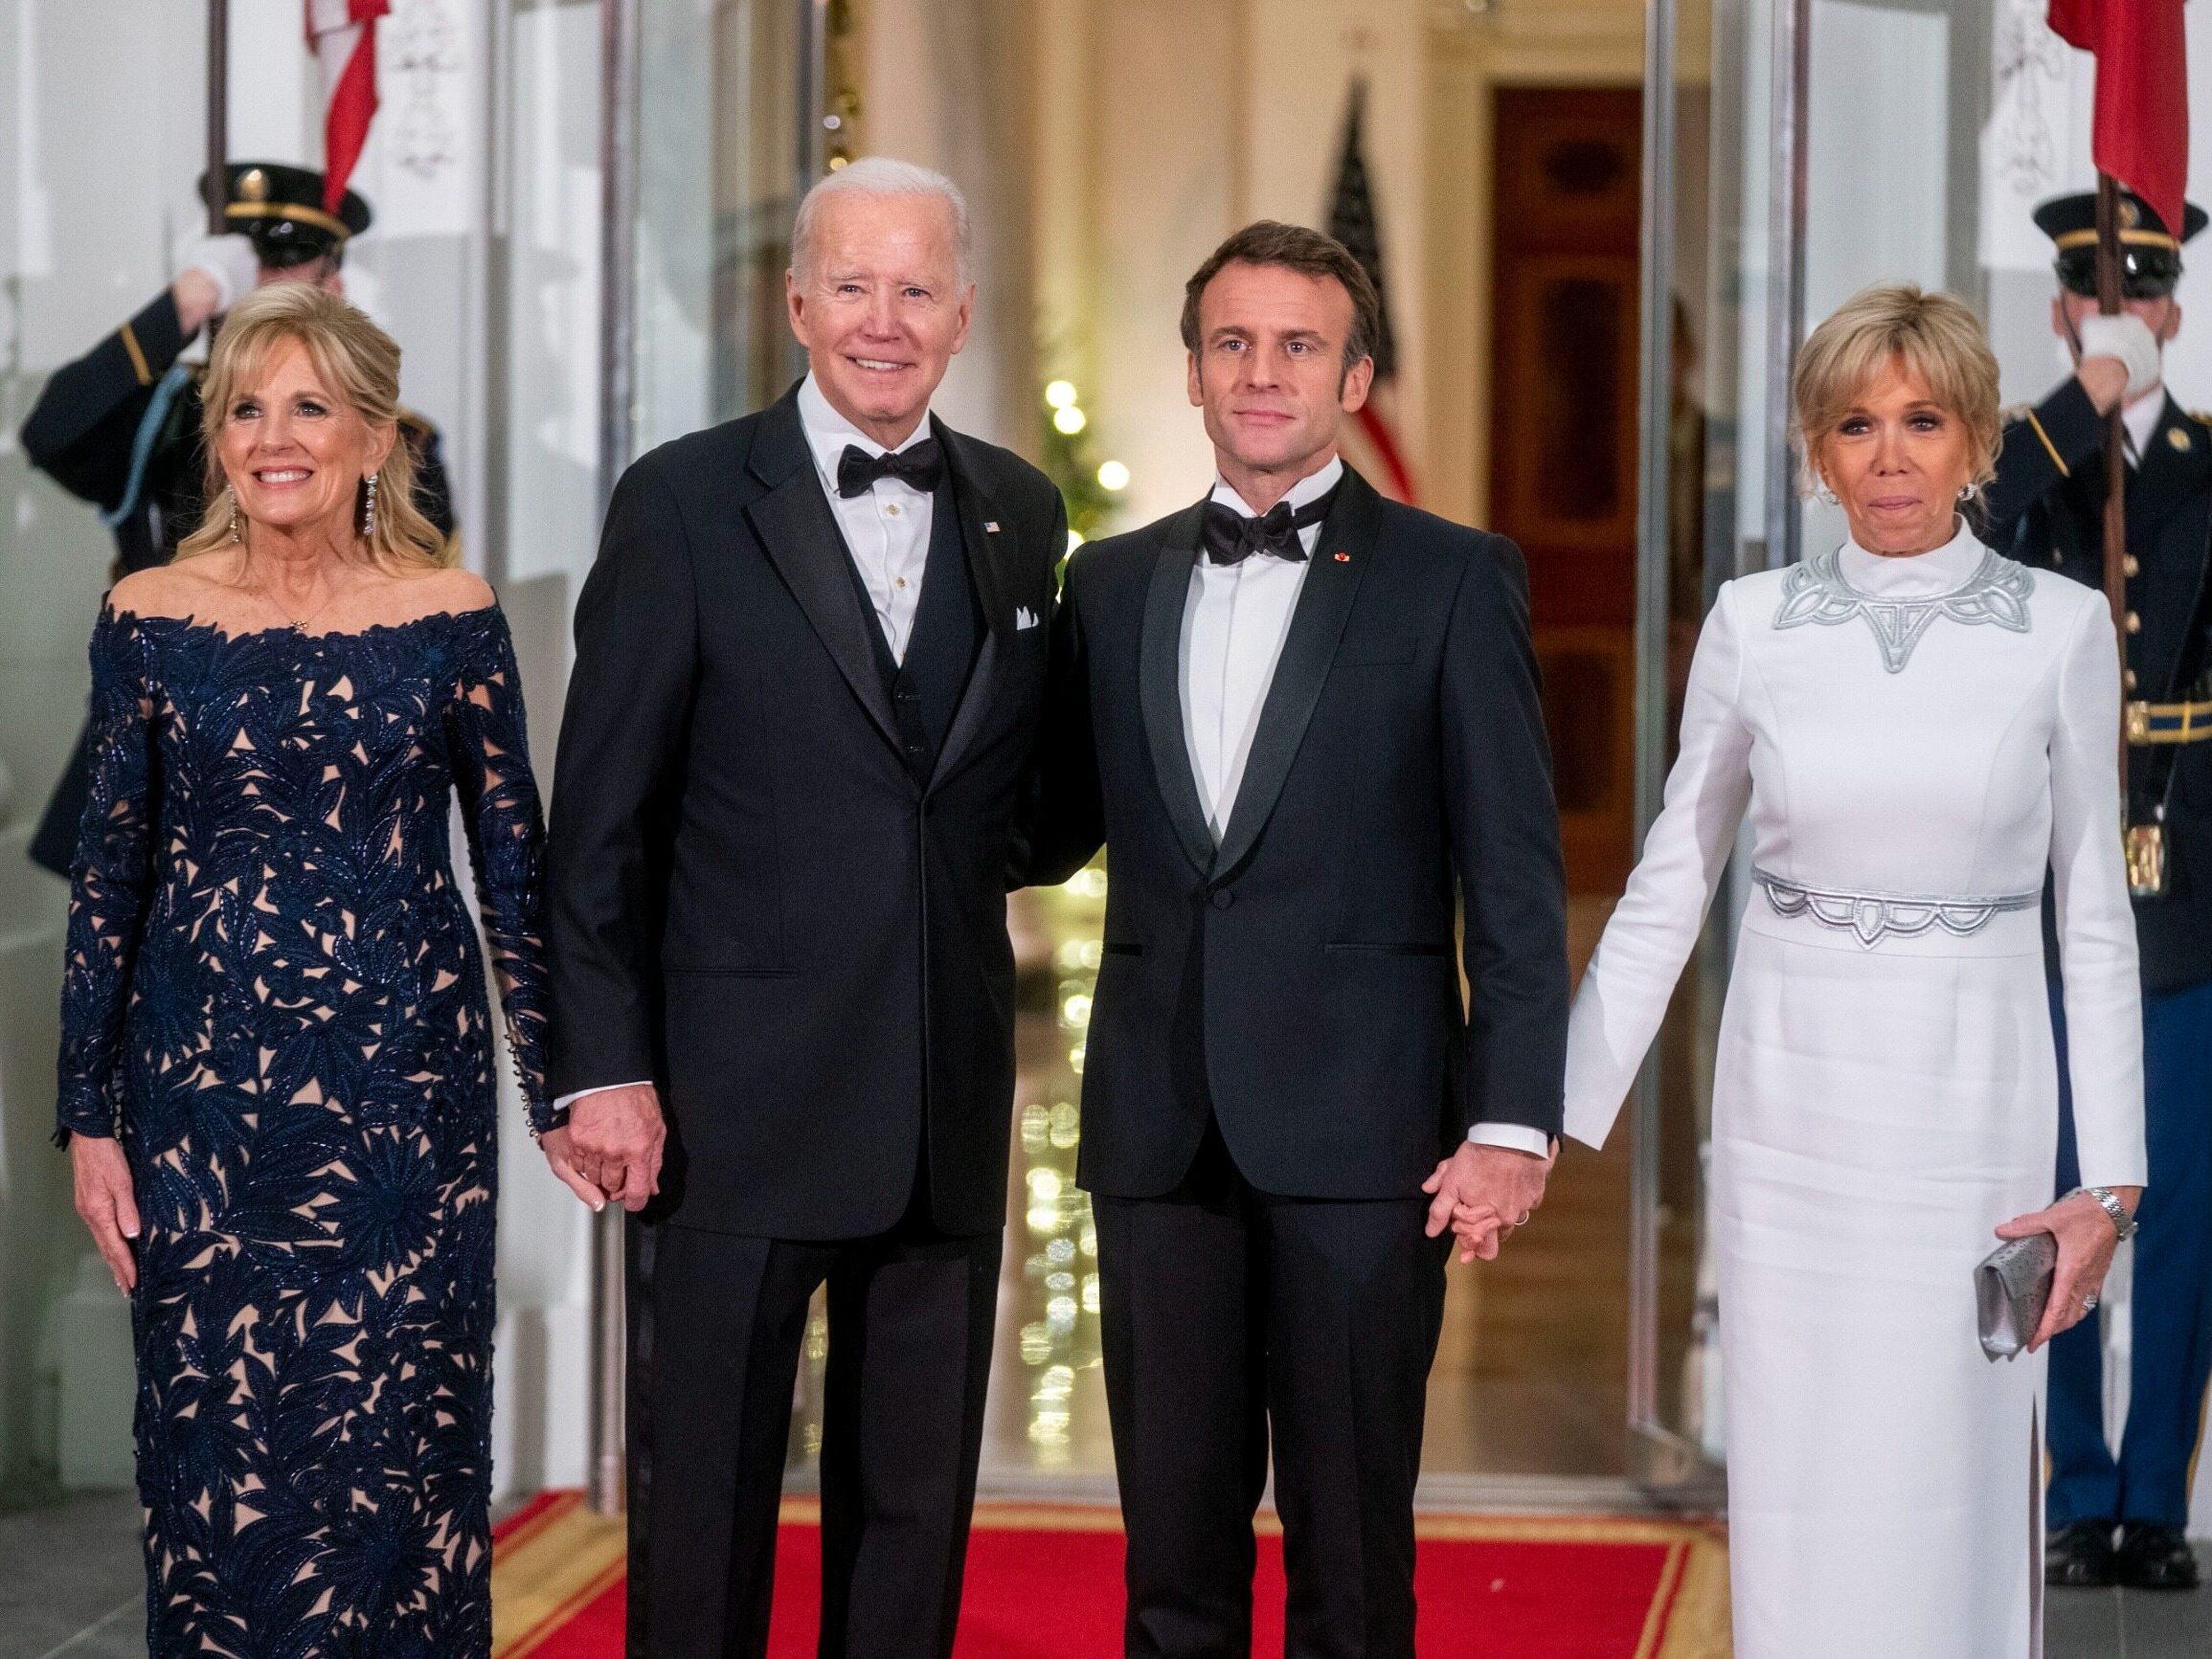 La première dame de France dans une robe audacieuse.  Brigitte Macron a été brillante aux États-Unis – Wprost